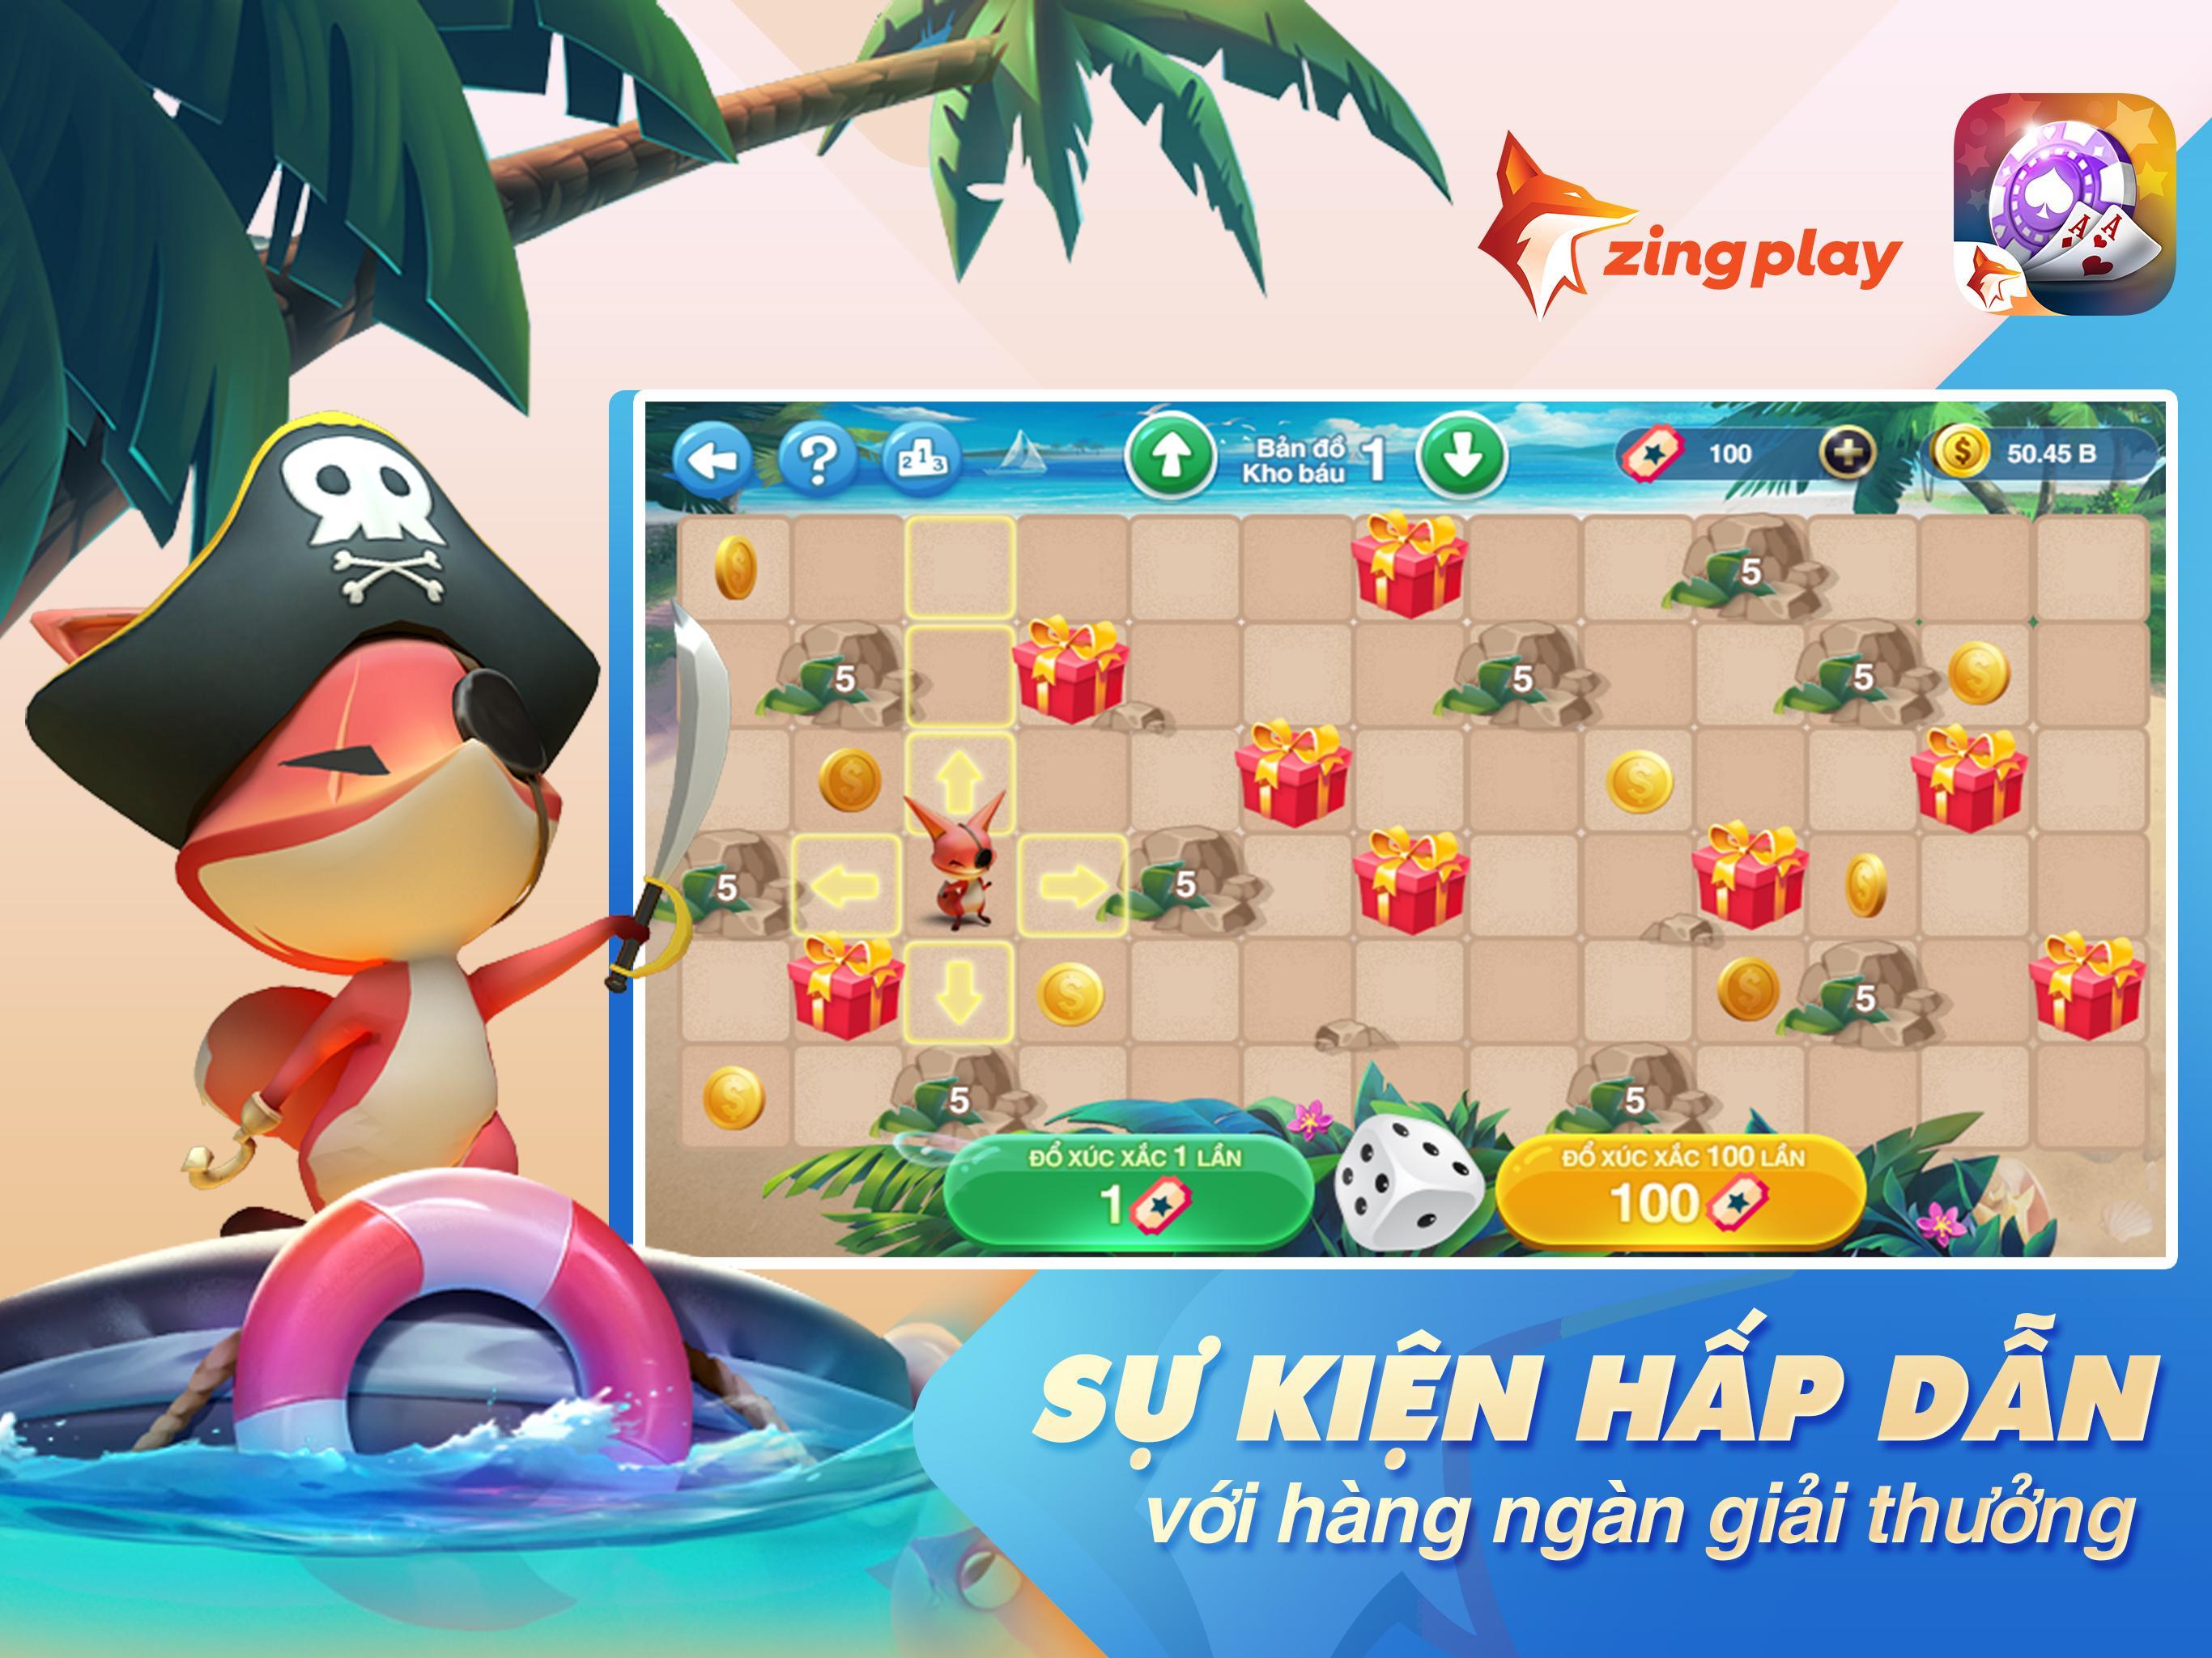 Tú Lơ Khơ - Tá Lả - Phỏm -  ZingPlay Game bài free 4.3 Screenshot 9